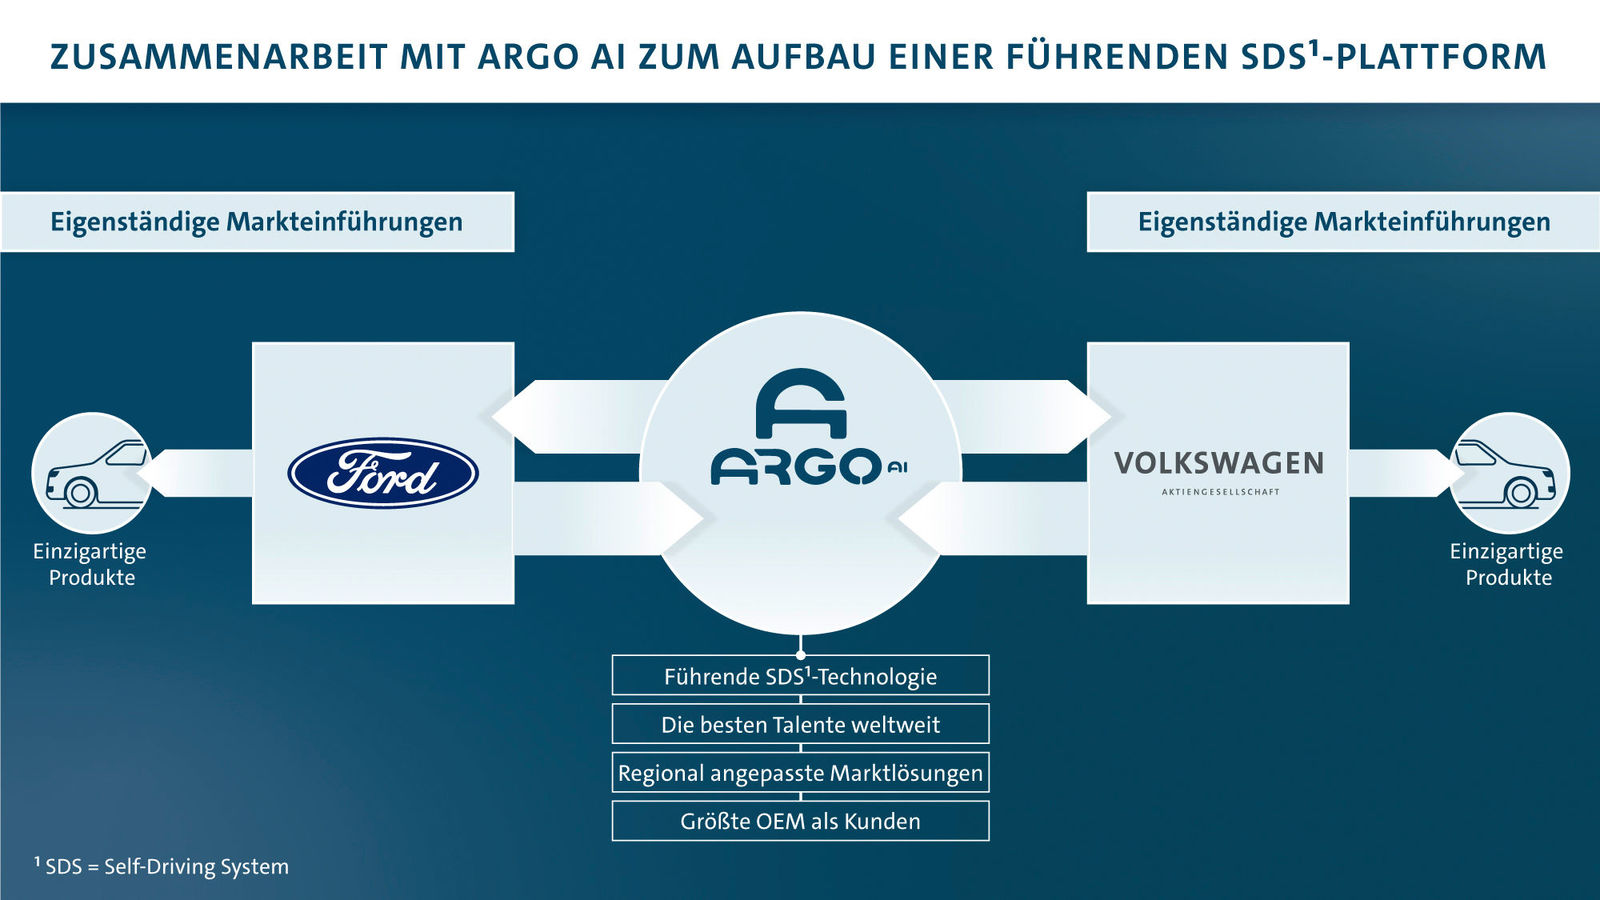 Ford und Volkswagen weiten weltweite Kooperation auf Autonomes Fahren und Elektrifizierung aus